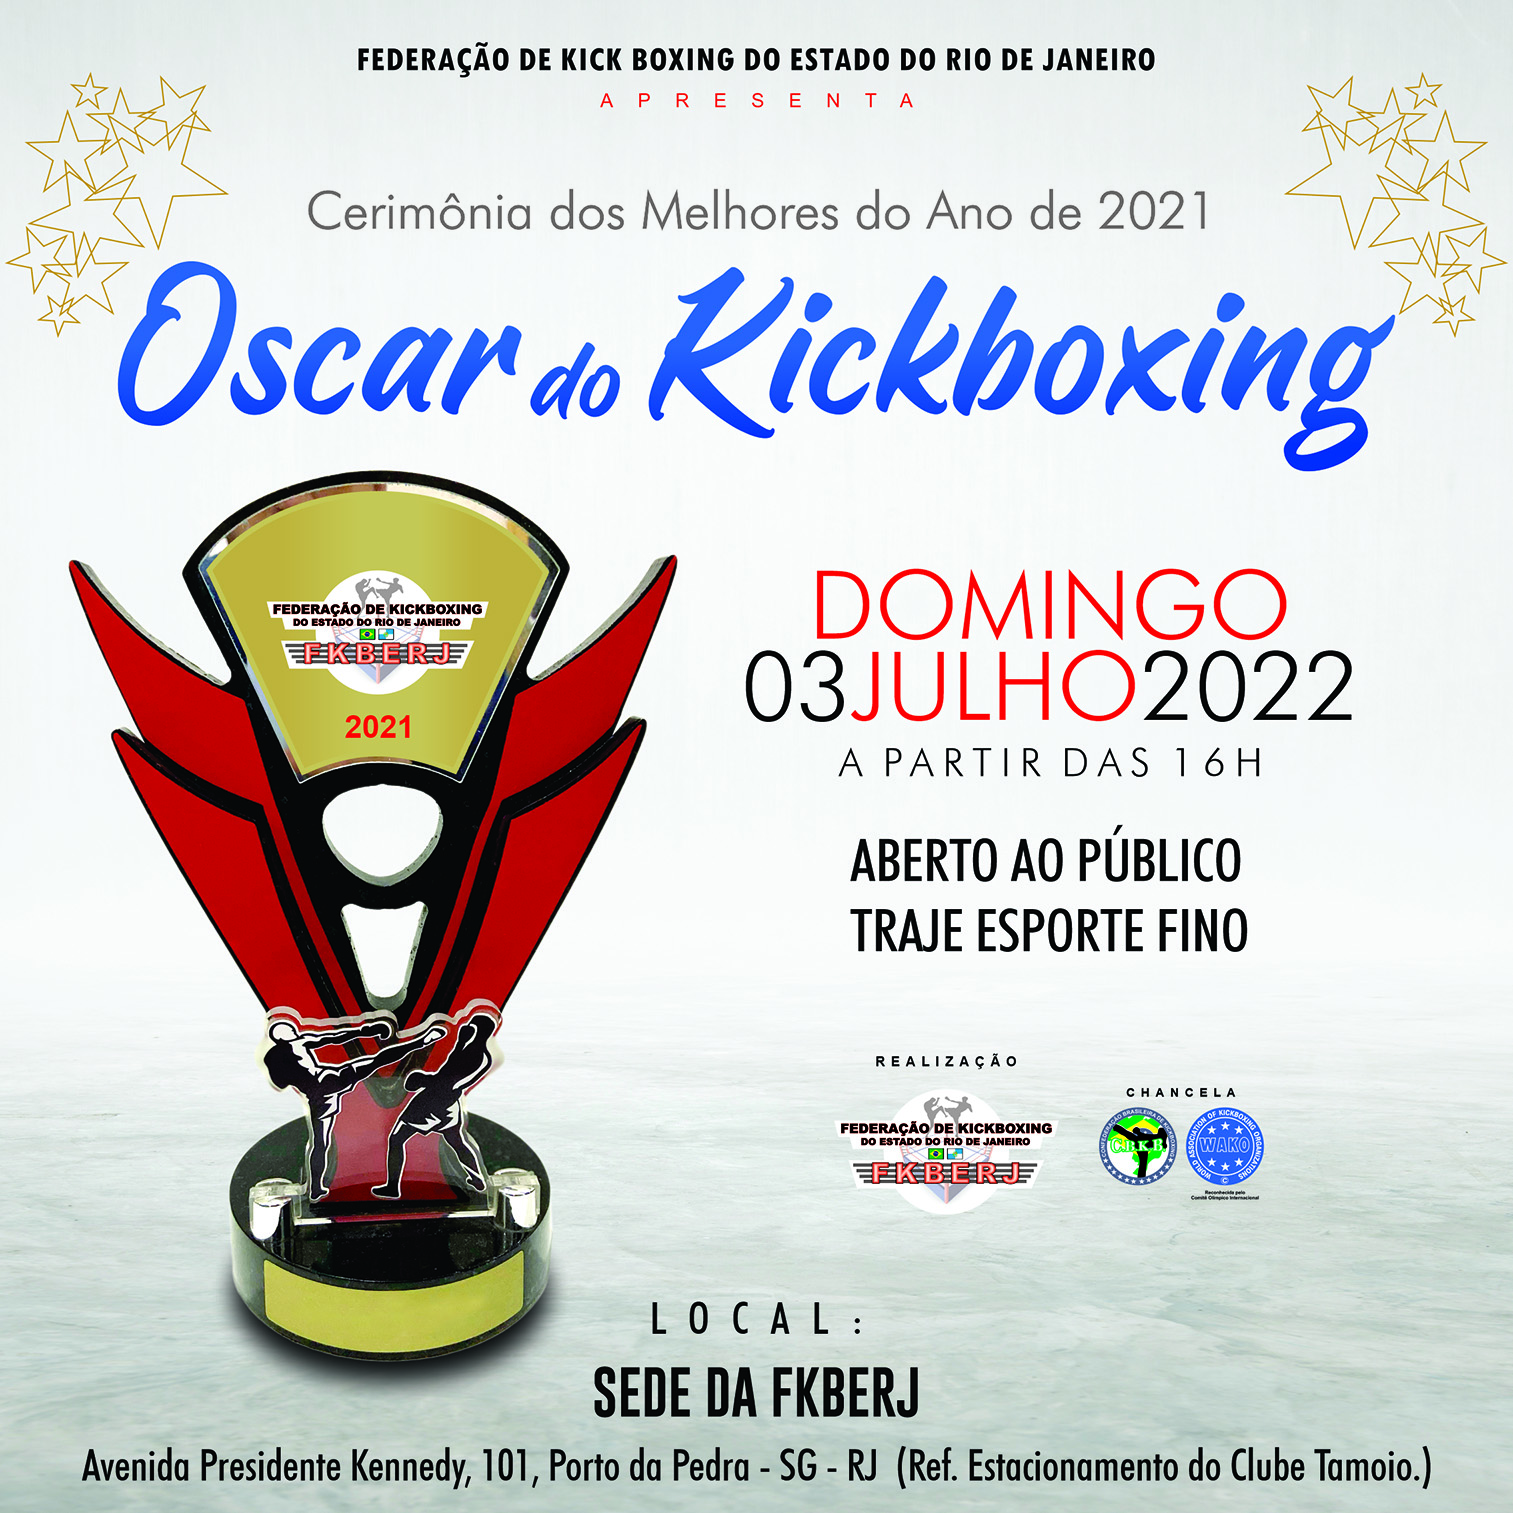 Melhores do Ano de 2021 “Oscar do Kickboxing”!